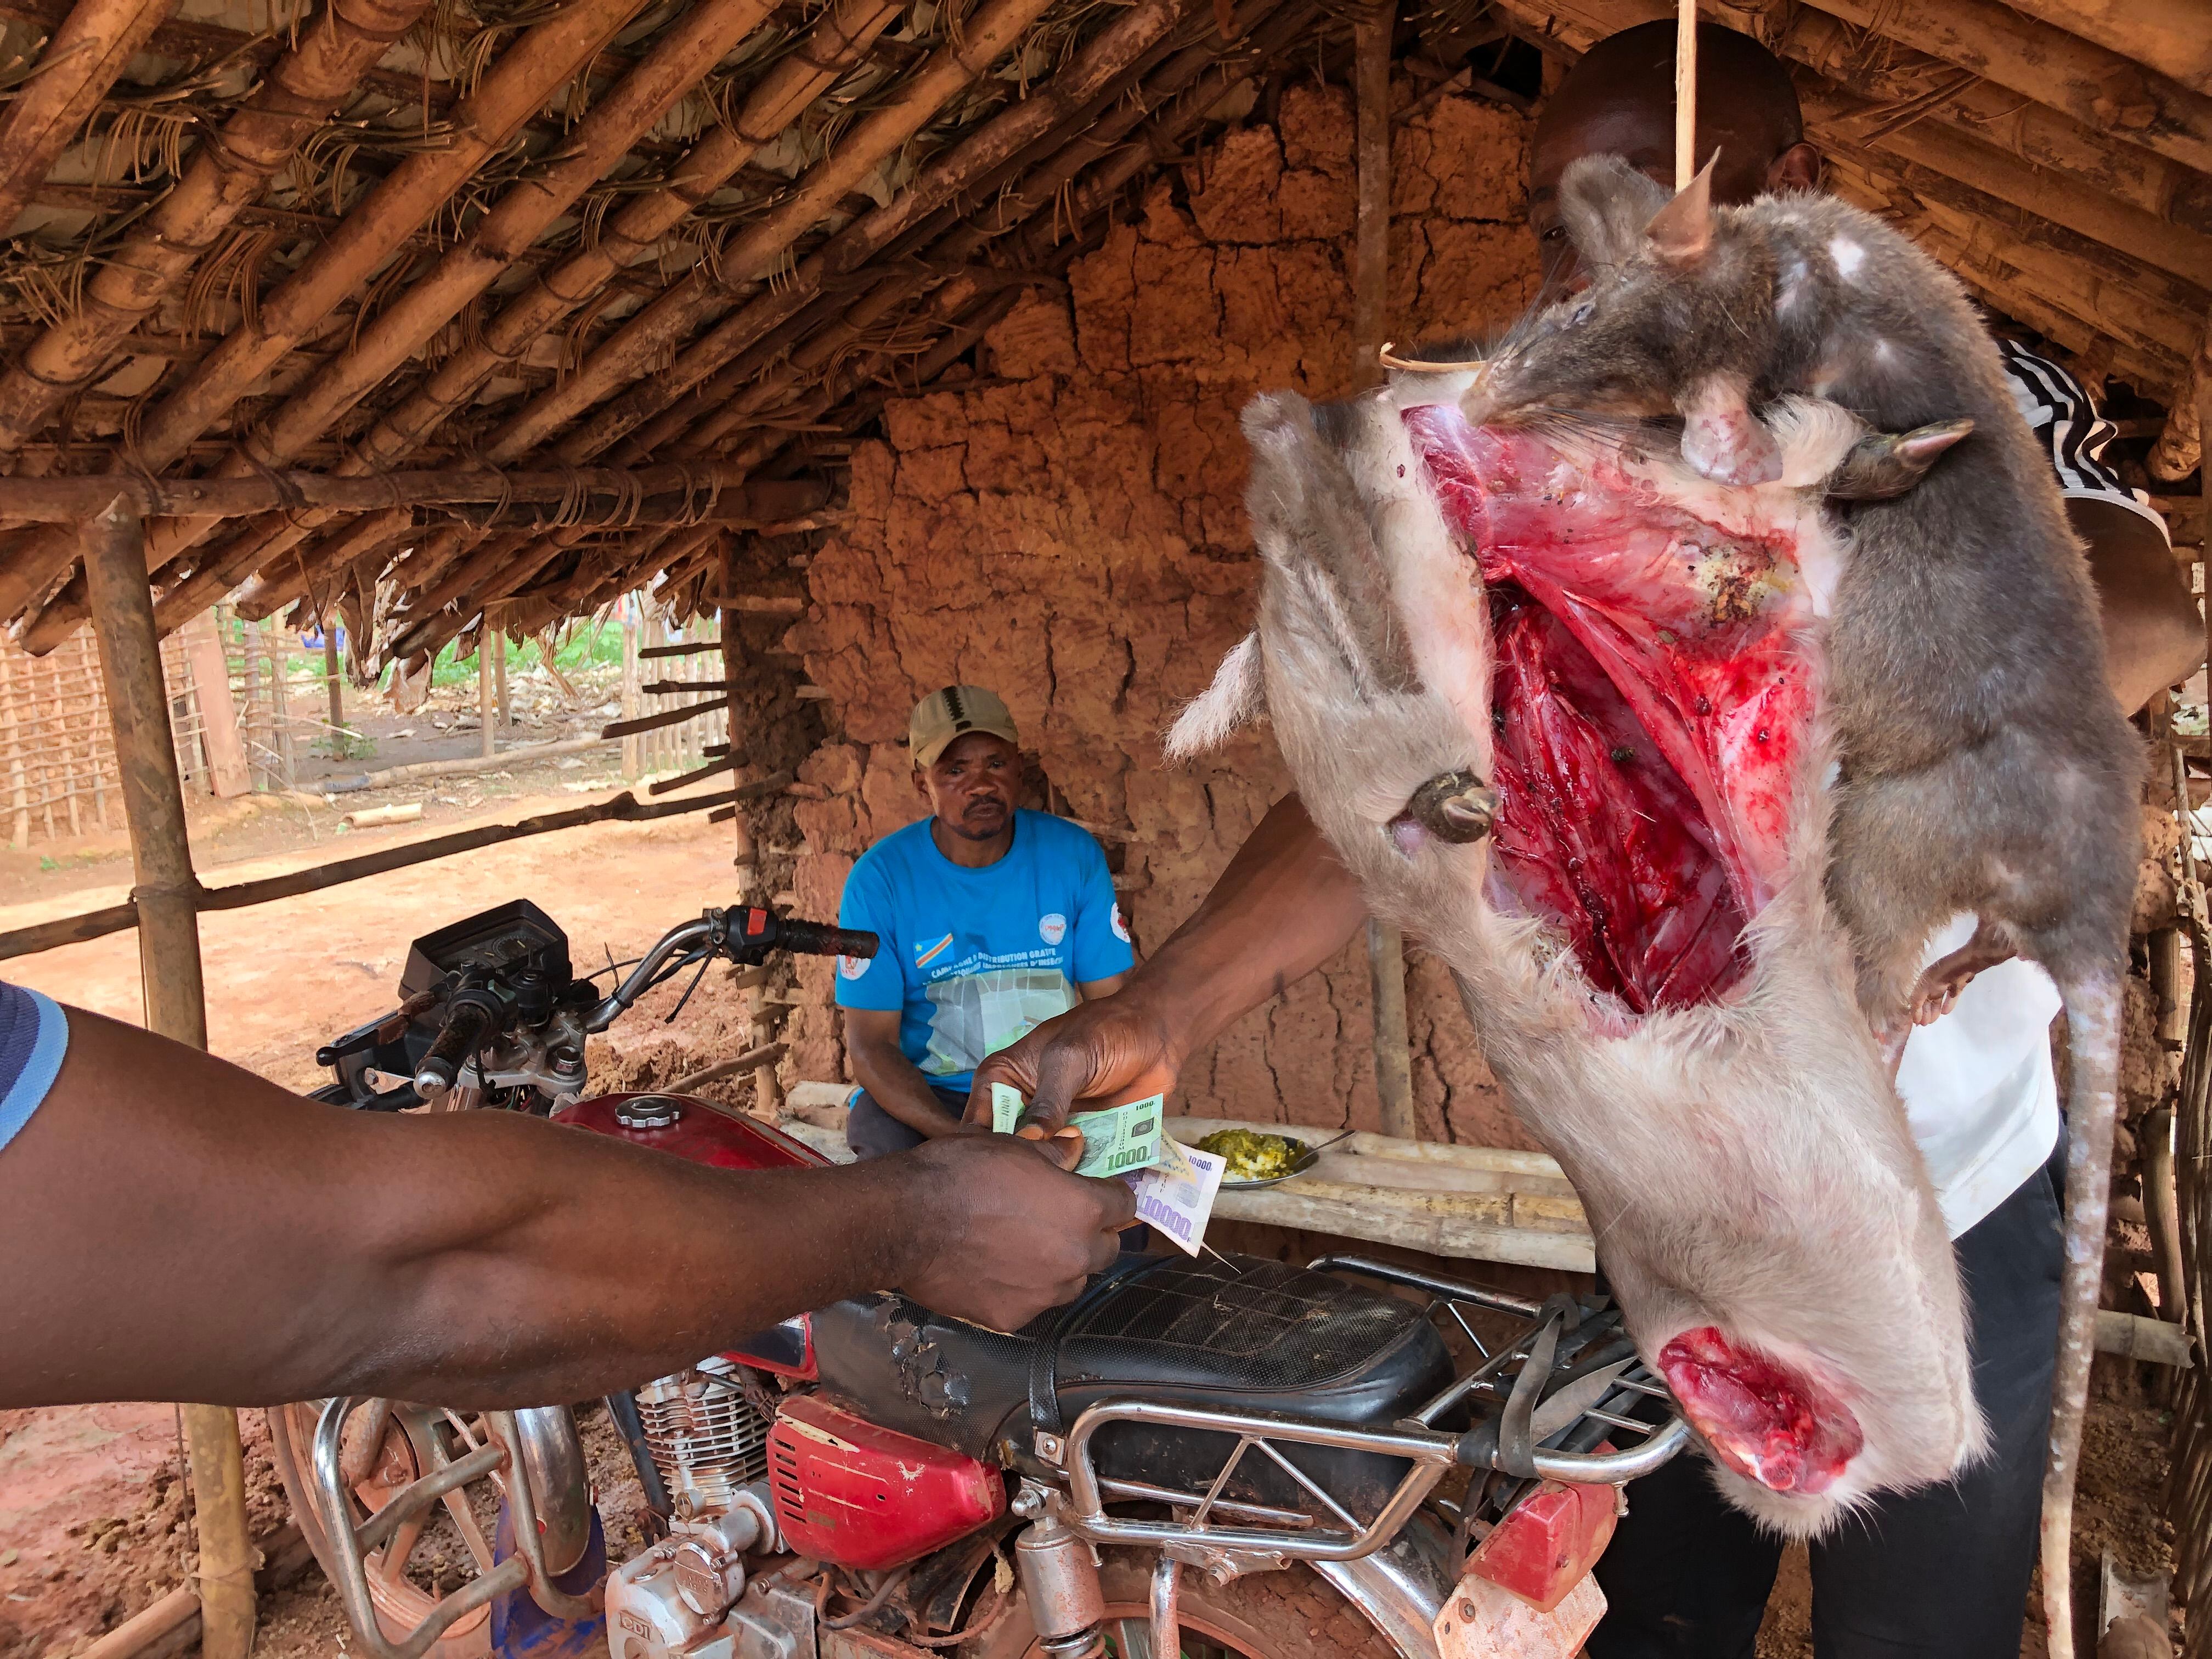 Compraventa de carne fresca de una especie protegida de antílope en el noreste de la RDC. La caza comercial se intensifica mucho junto a las carreteras, que abren el acceso a la selva y permiten vender el producto más rápido.